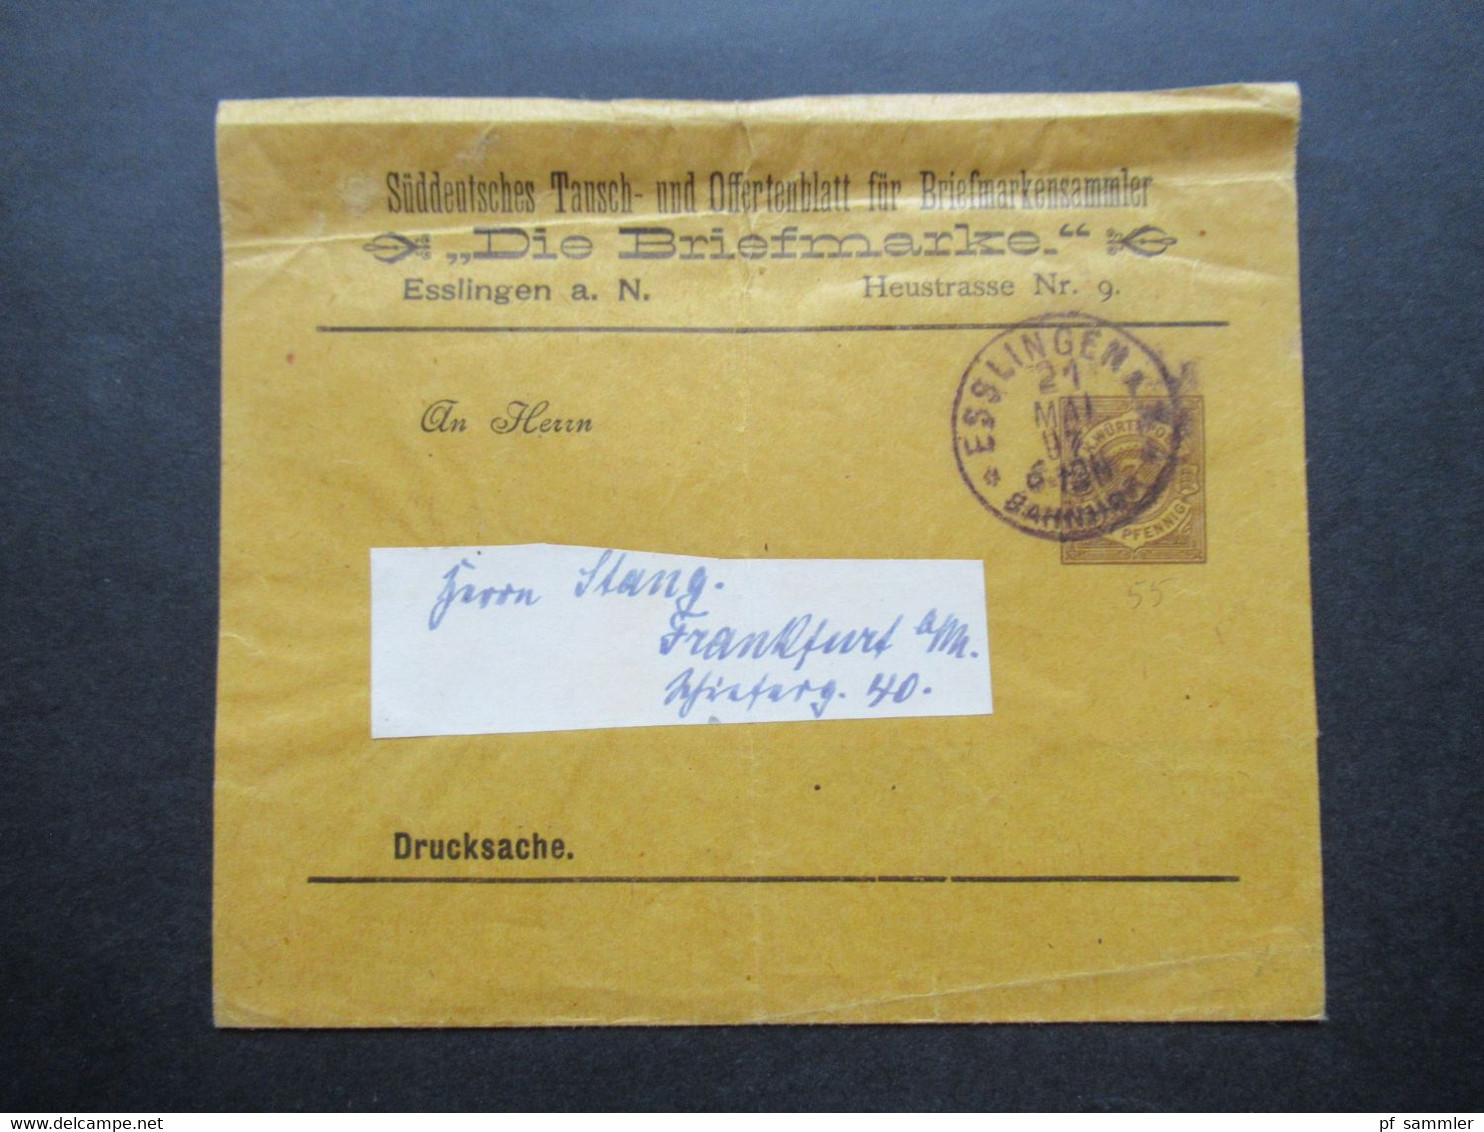 Württemberg 1897 PP Privatganzsache Streifband Süddeutsches Tausch U.Offertenblatt Für Briefmarkensammler Die Briefmarke - Ganzsachen